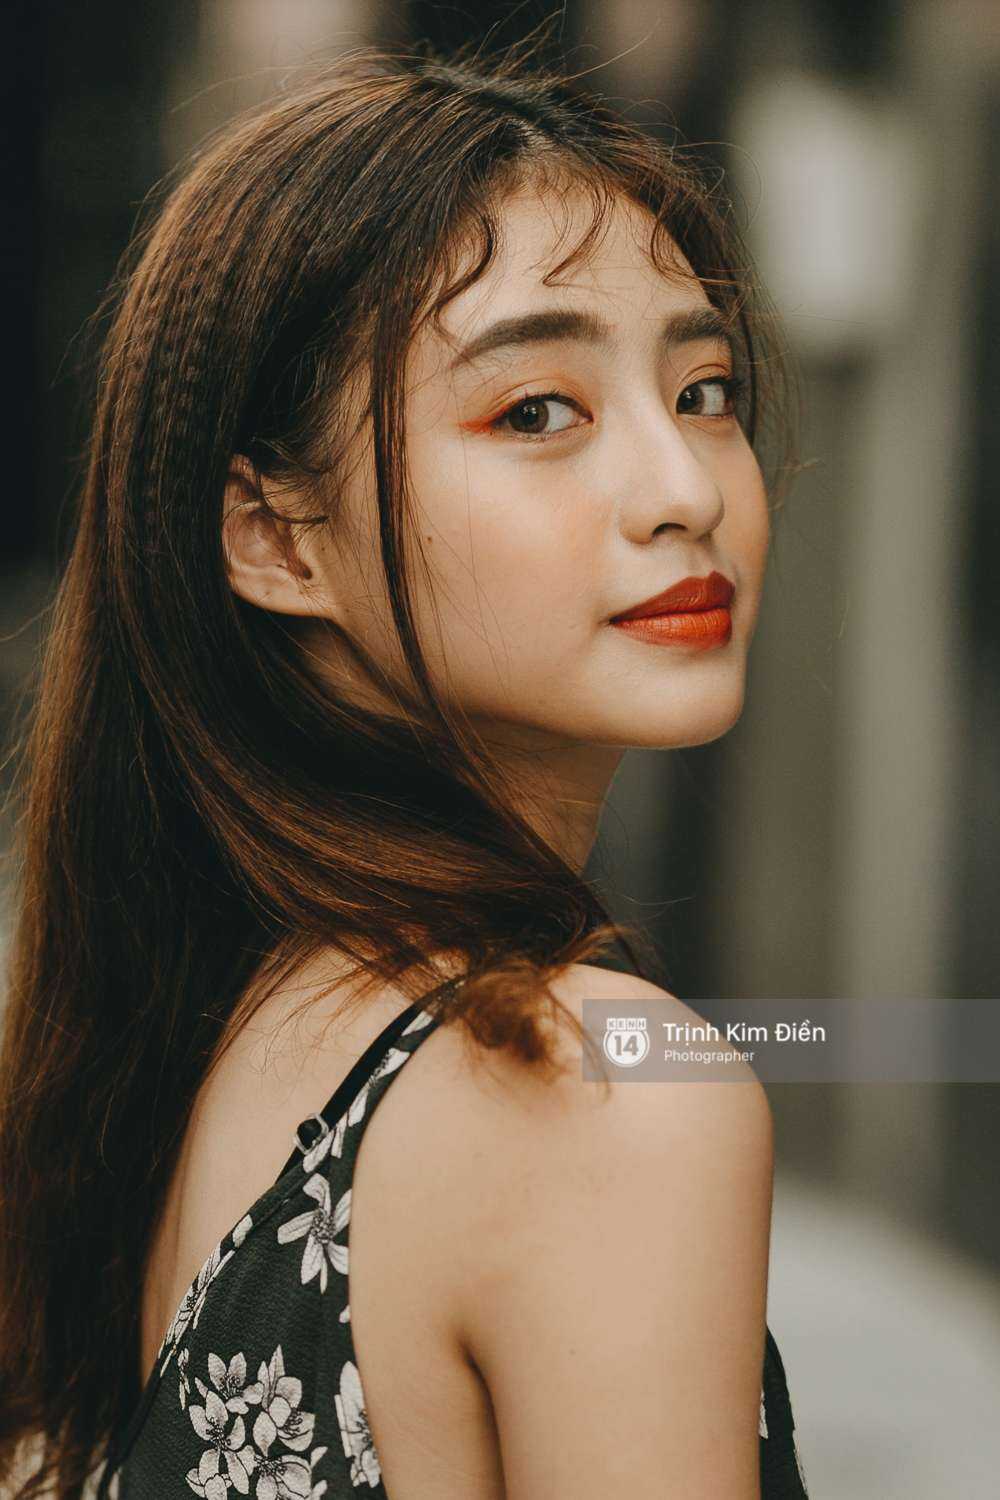 Dương Minh Ngọc: Cô nàng cực xinh đang chiếm sóng Instagram Việt Nam - Ảnh 9.